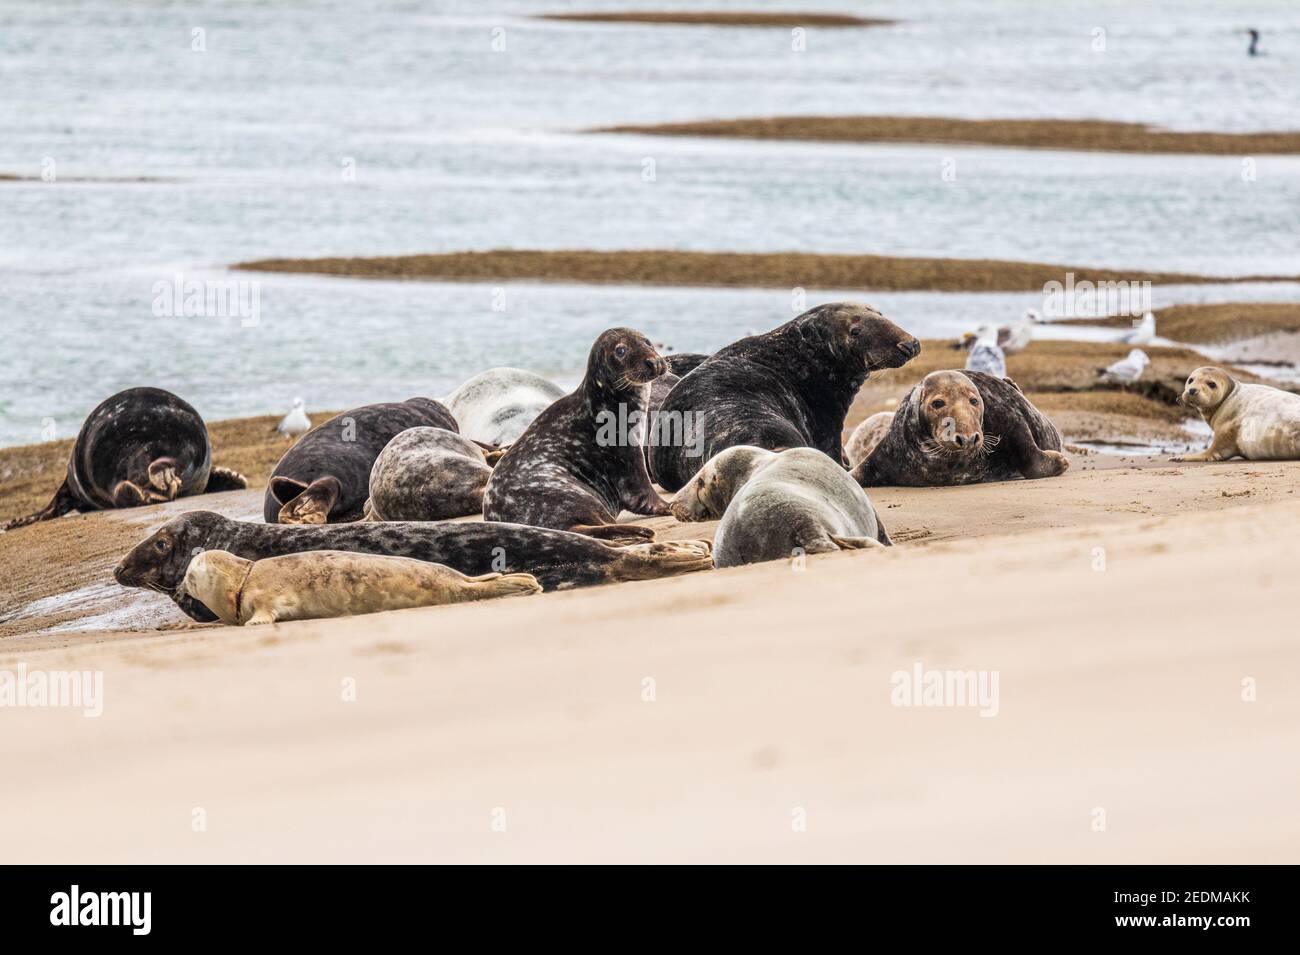 Colonie de phoques gris au repos sur un banc de sable, France, Pas de Calais, été Stock Photo